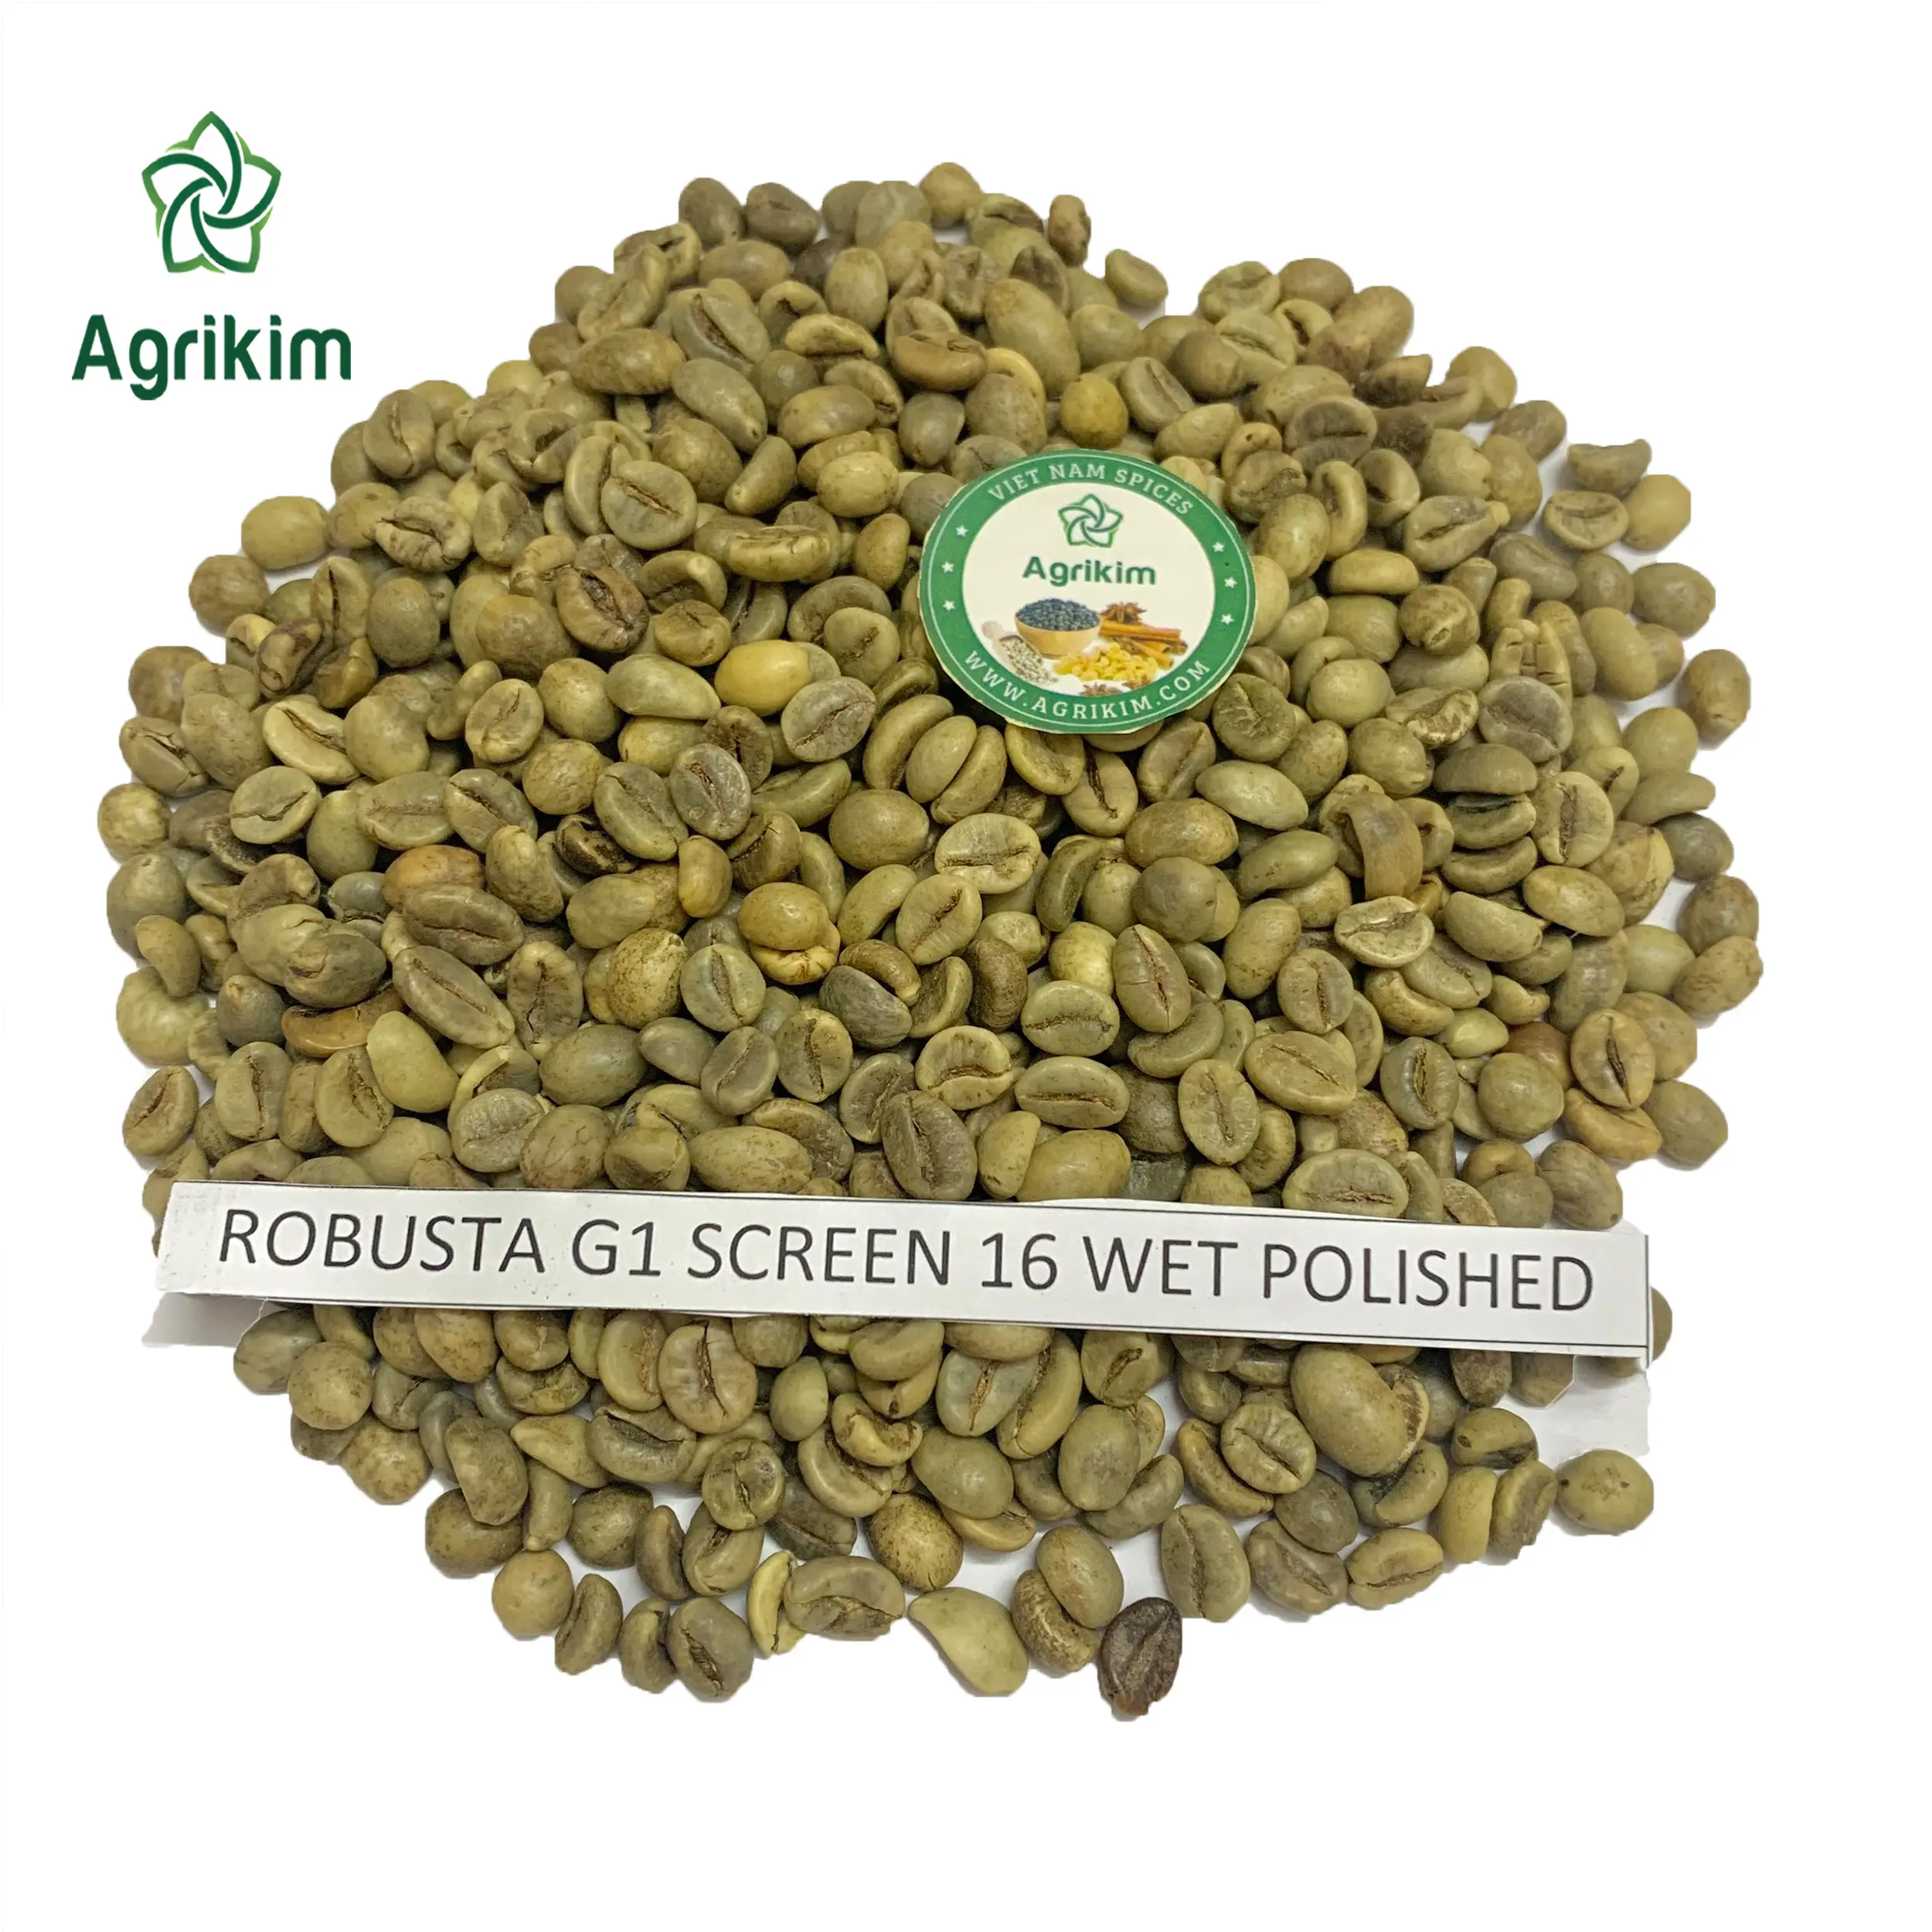 निर्यात के लिए सबसे अच्छा रोबस्टा ग्रीन कॉफी बीन्स अरेबिका हरी कॉफी बीन्स से उच्च गुणवत्ता के साथ वियतनाम मूल + 84363565928